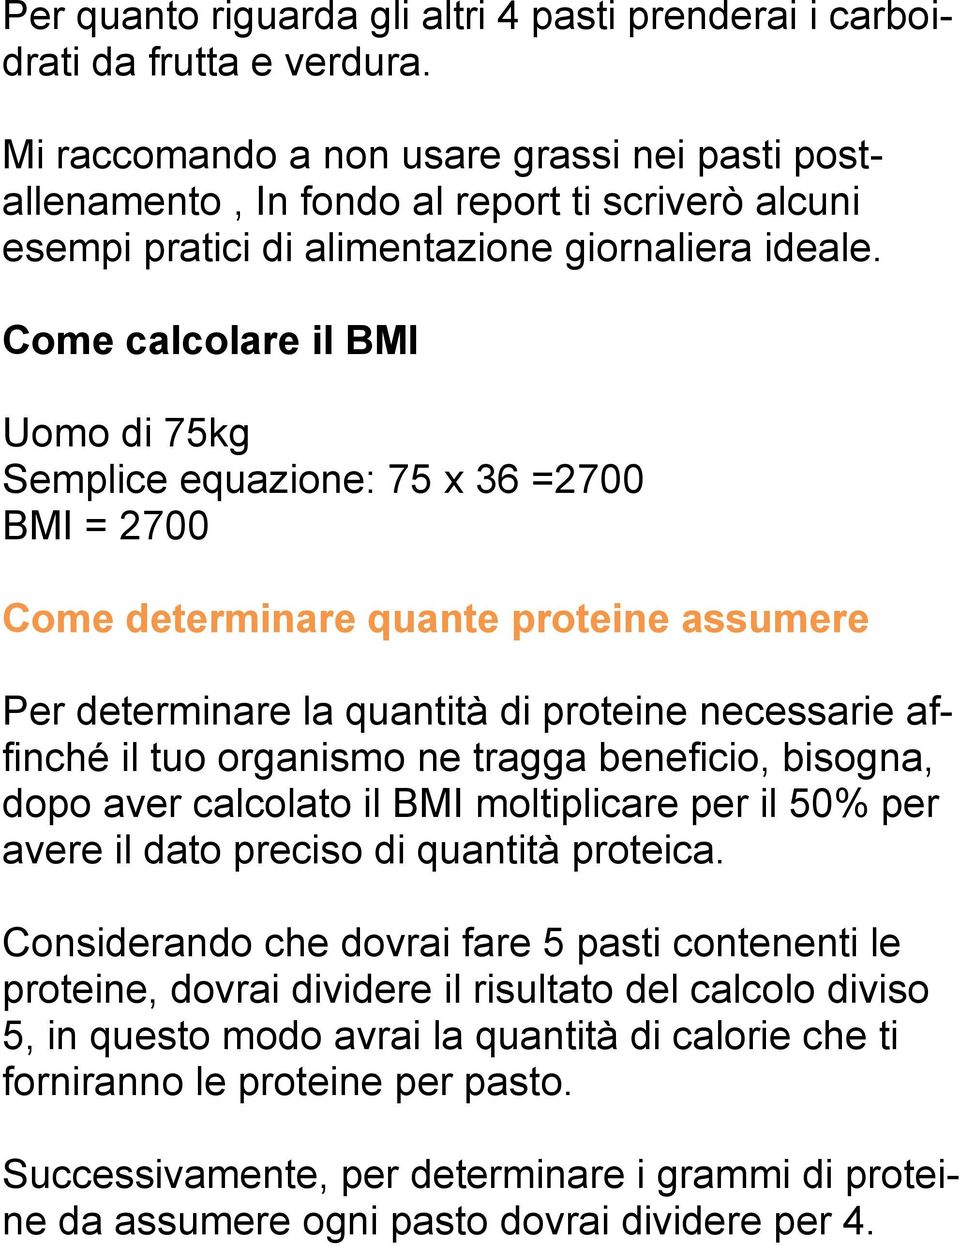 Come calcolare il BMI Uomo di 75kg Semplice equazione: 75 x 36 =2700 BMI = 2700 Come determinare quante proteine assumere Per determinare la quantità di proteine necessarie affinché il tuo organismo